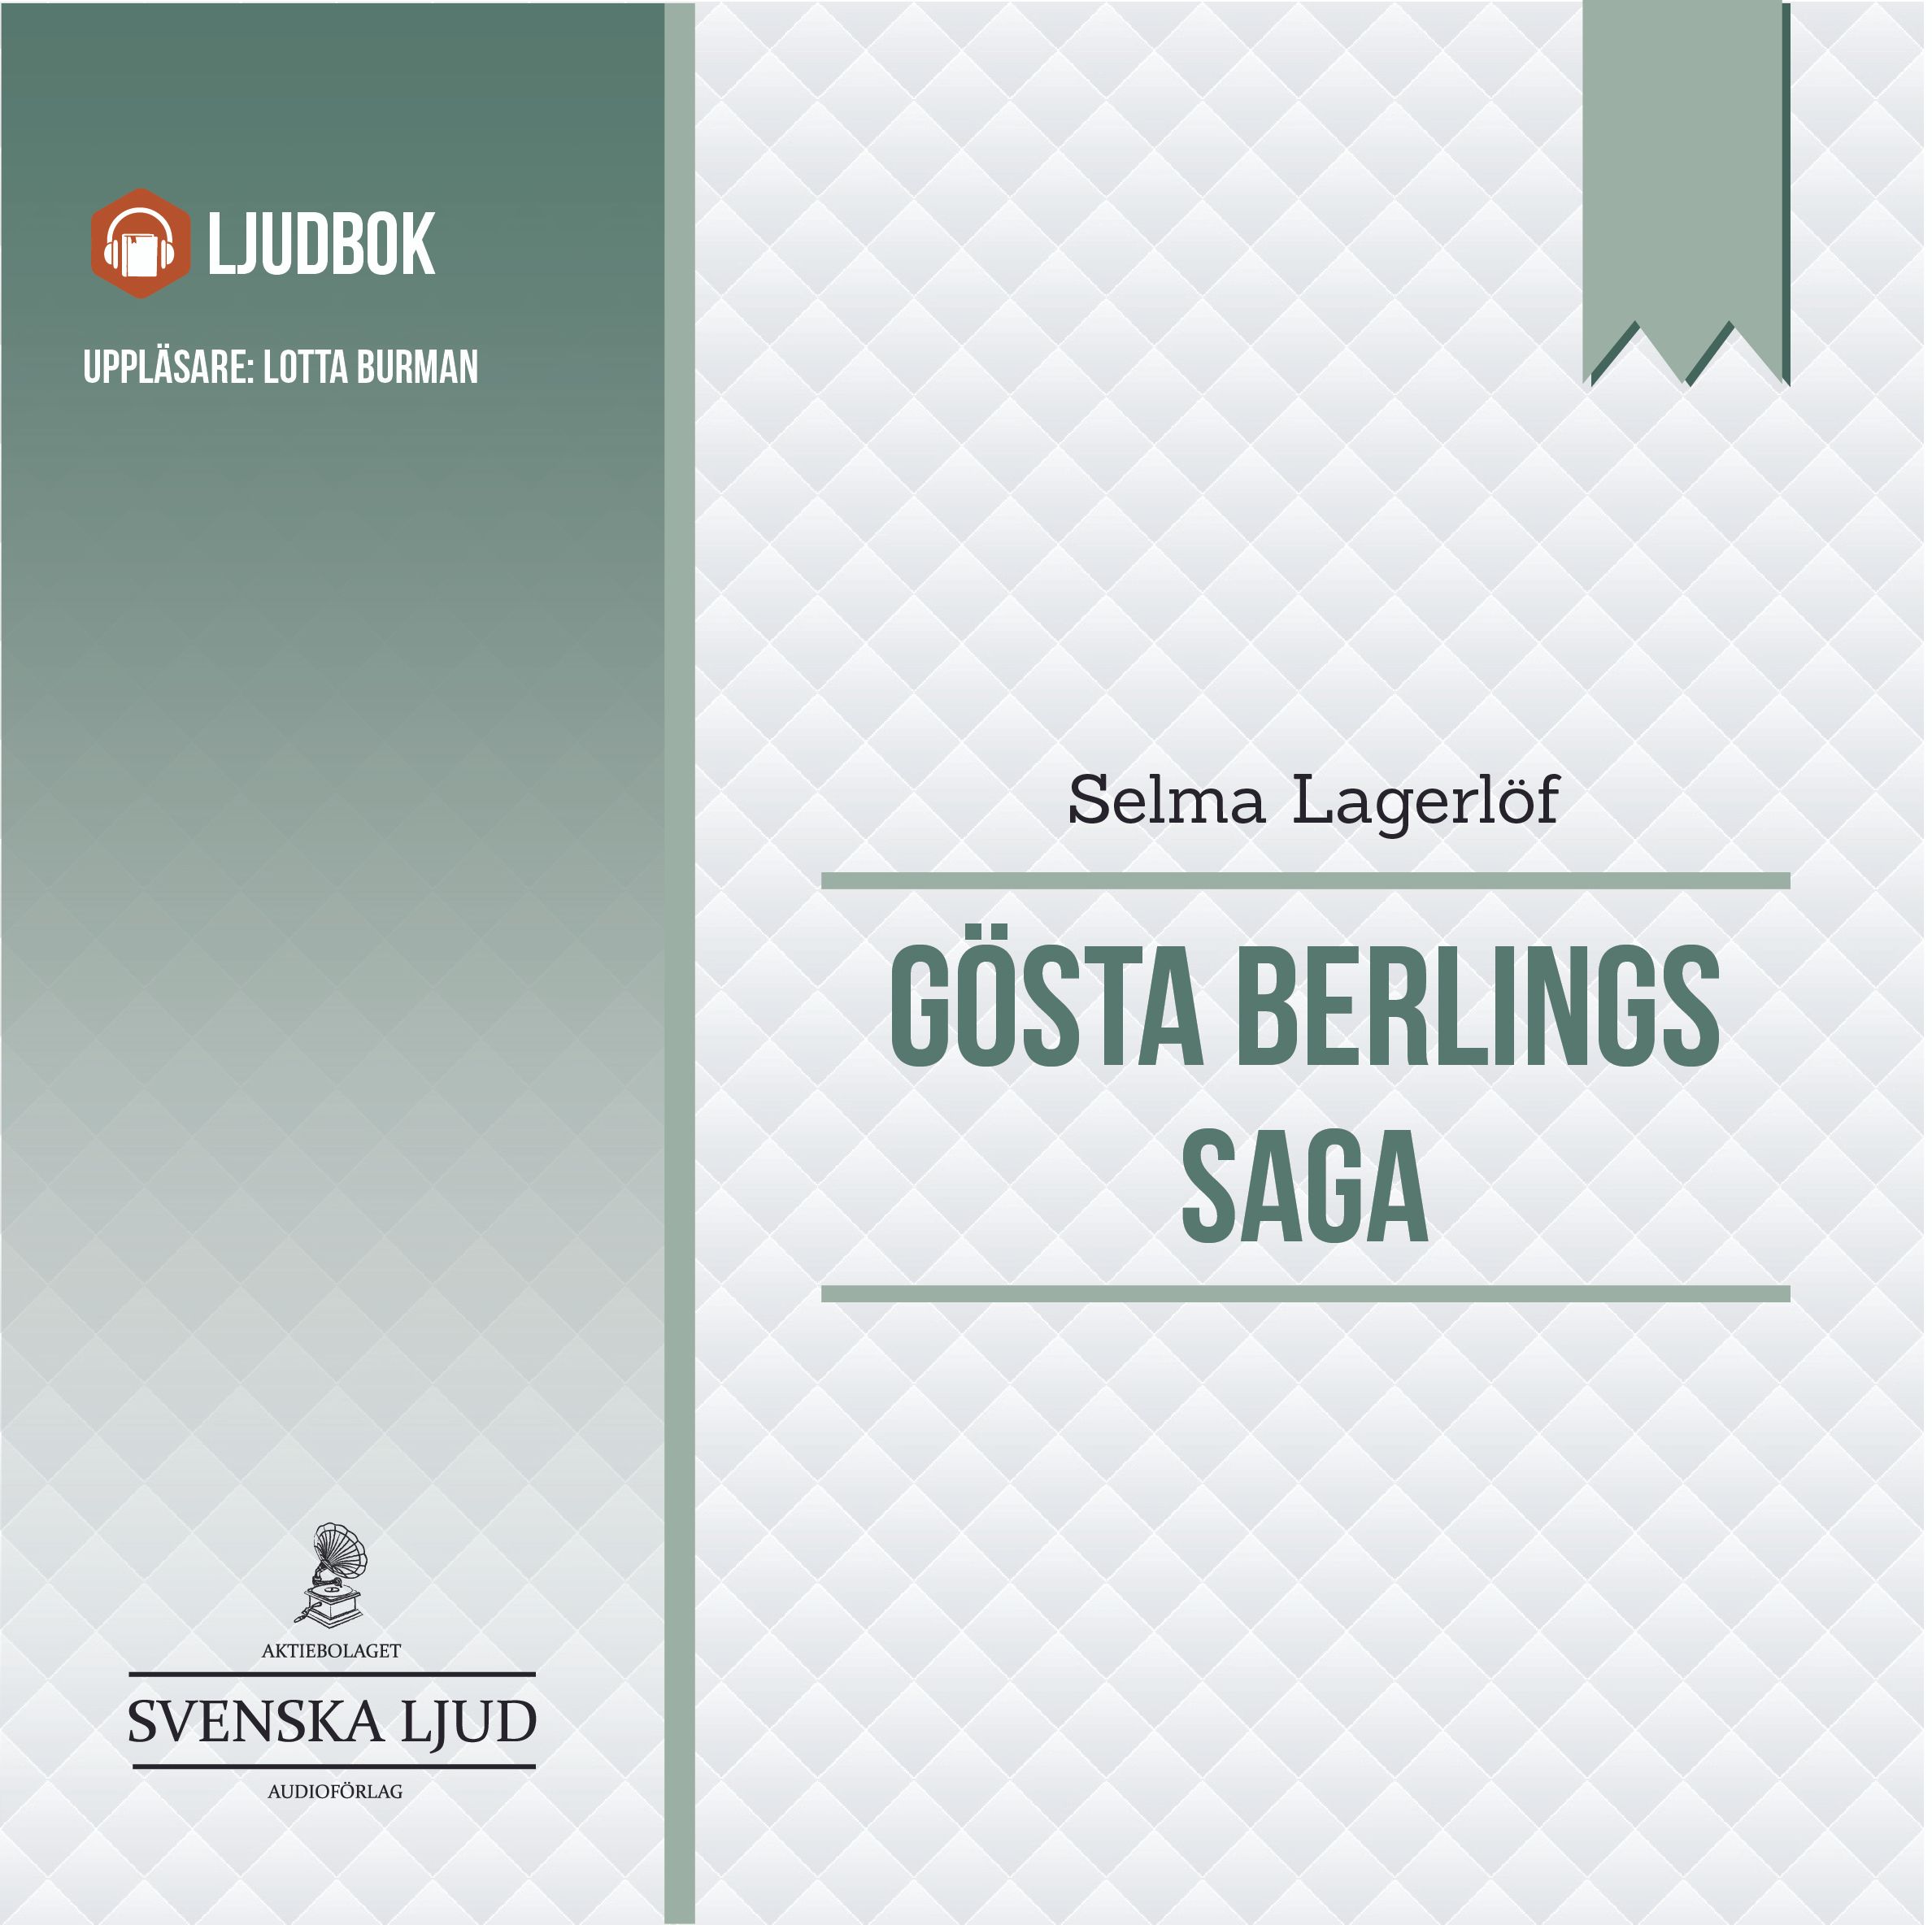 Gösta Berlings Saga, ljudbok av Selma Lagerlöf